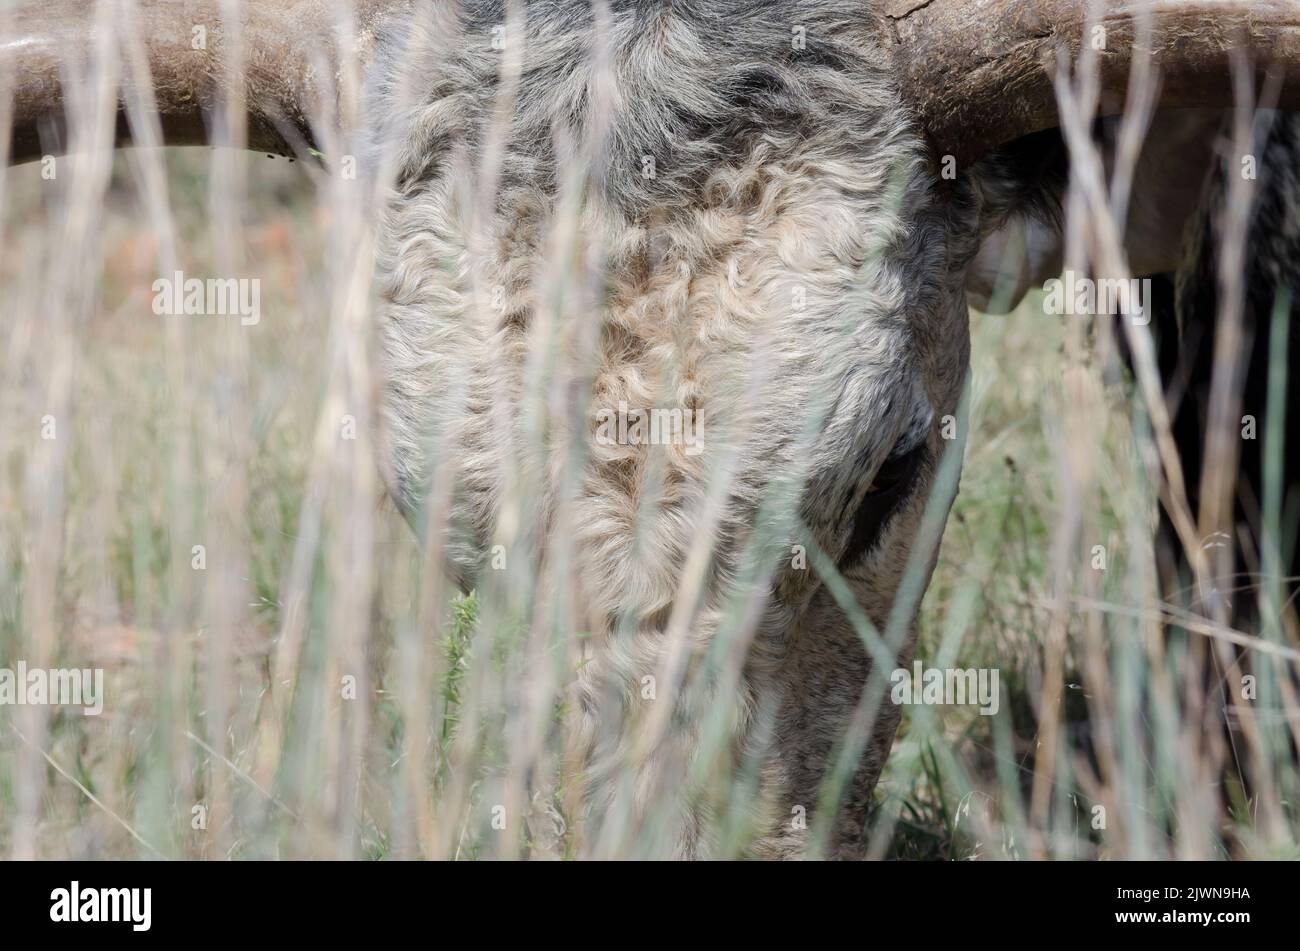 Texas Longhorn, Bos taurus taurus, bull face seen through prairie grasses Stock Photo